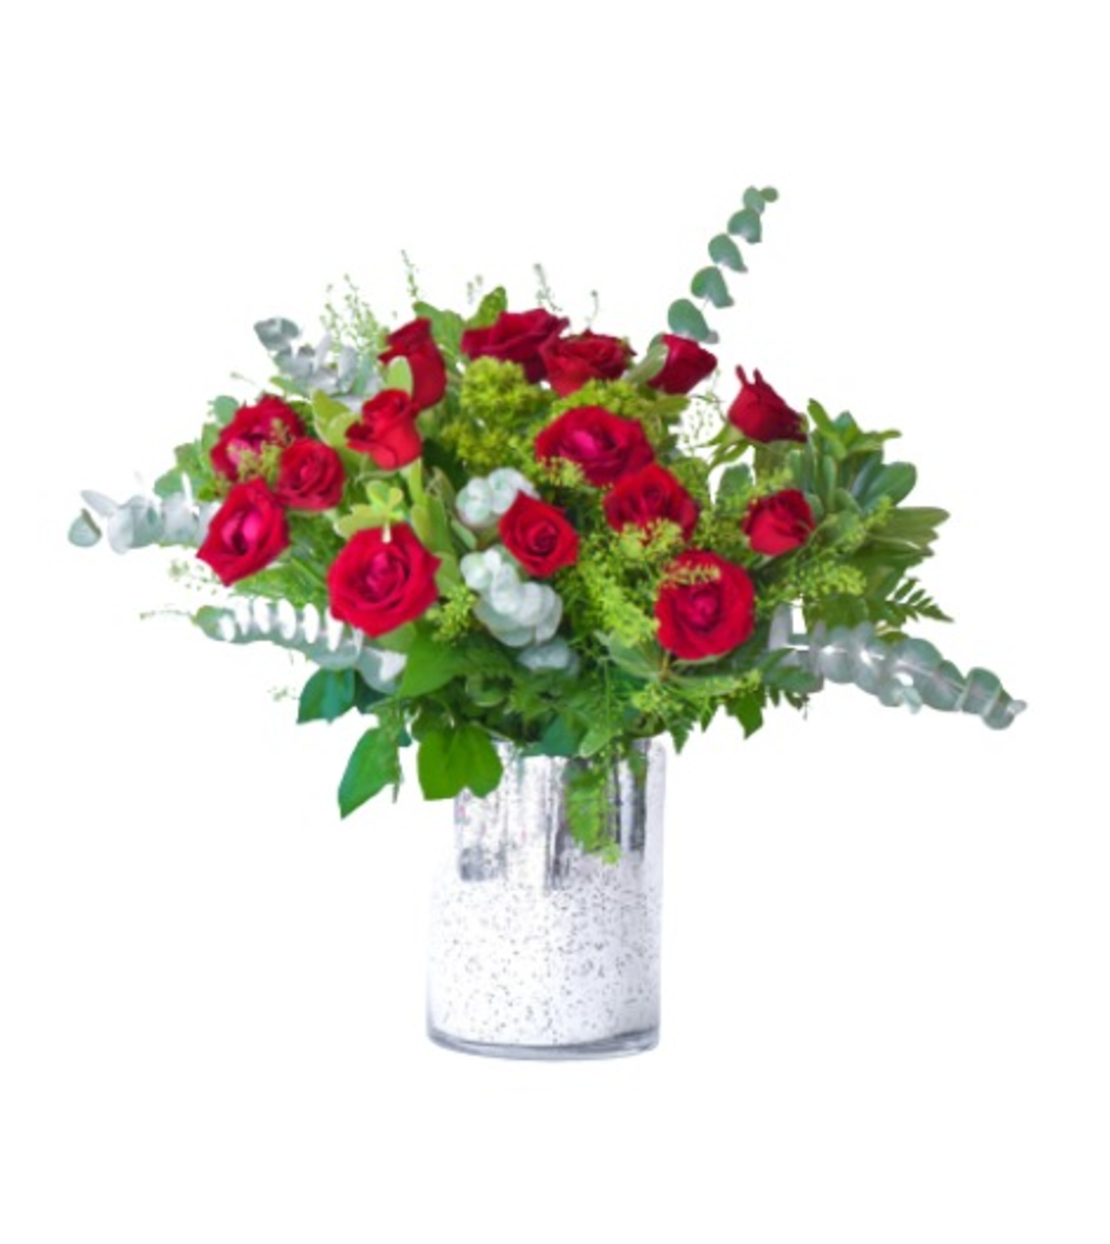 Rose Arrangement in a Vase